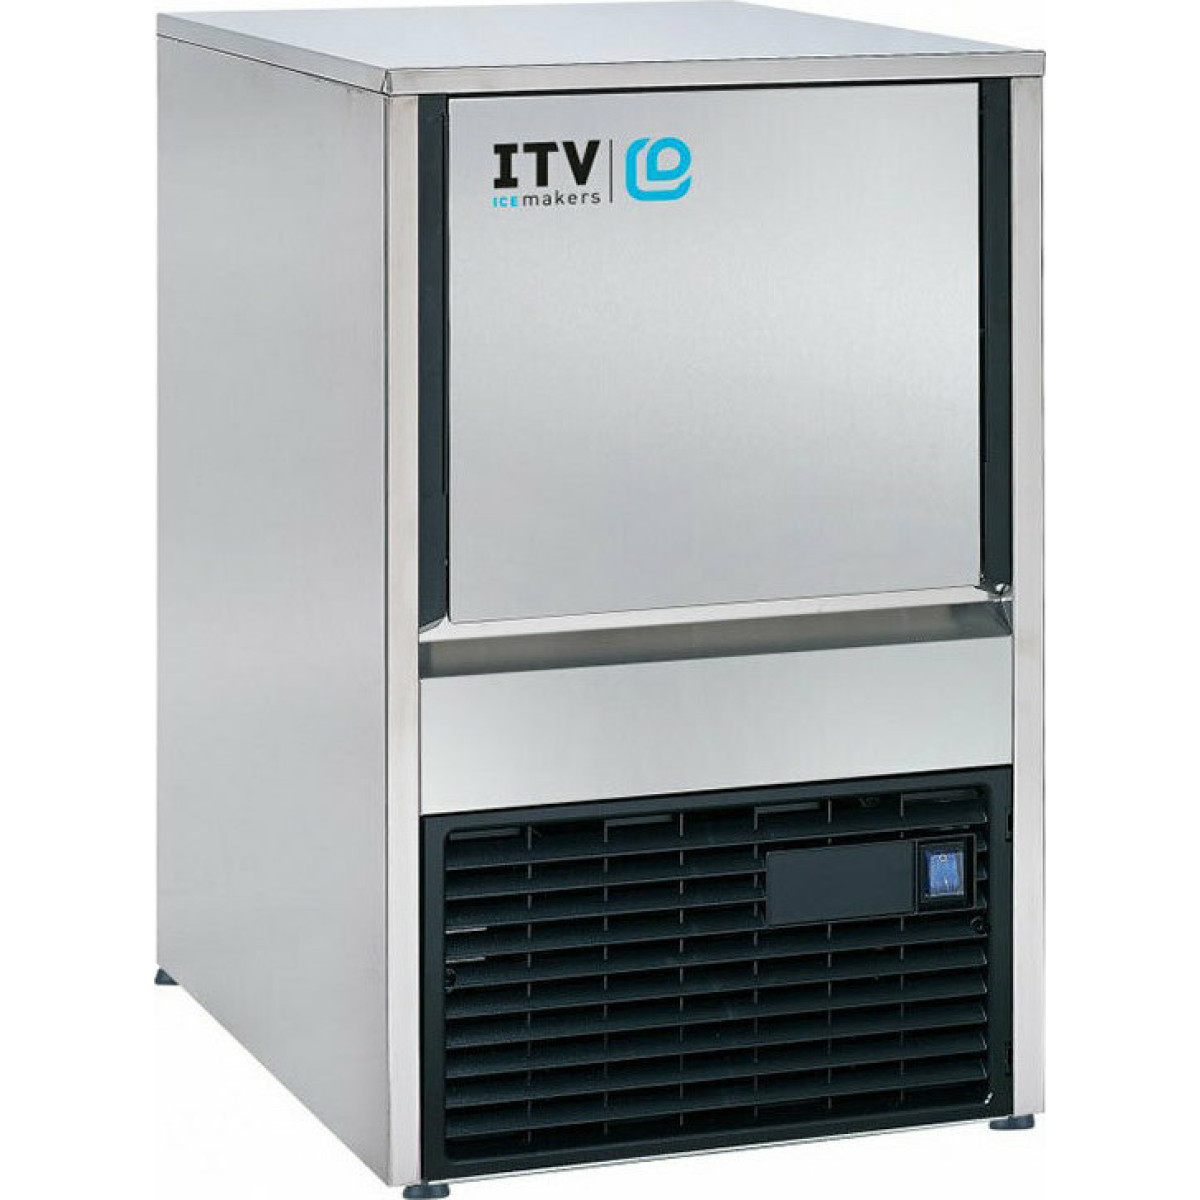 Παγομηχανή ITV Quasar NGQ 40A με Λειτουργία Ανάδευσης Ημερήσια Παραγωγή 45kg  Παγομηχανές